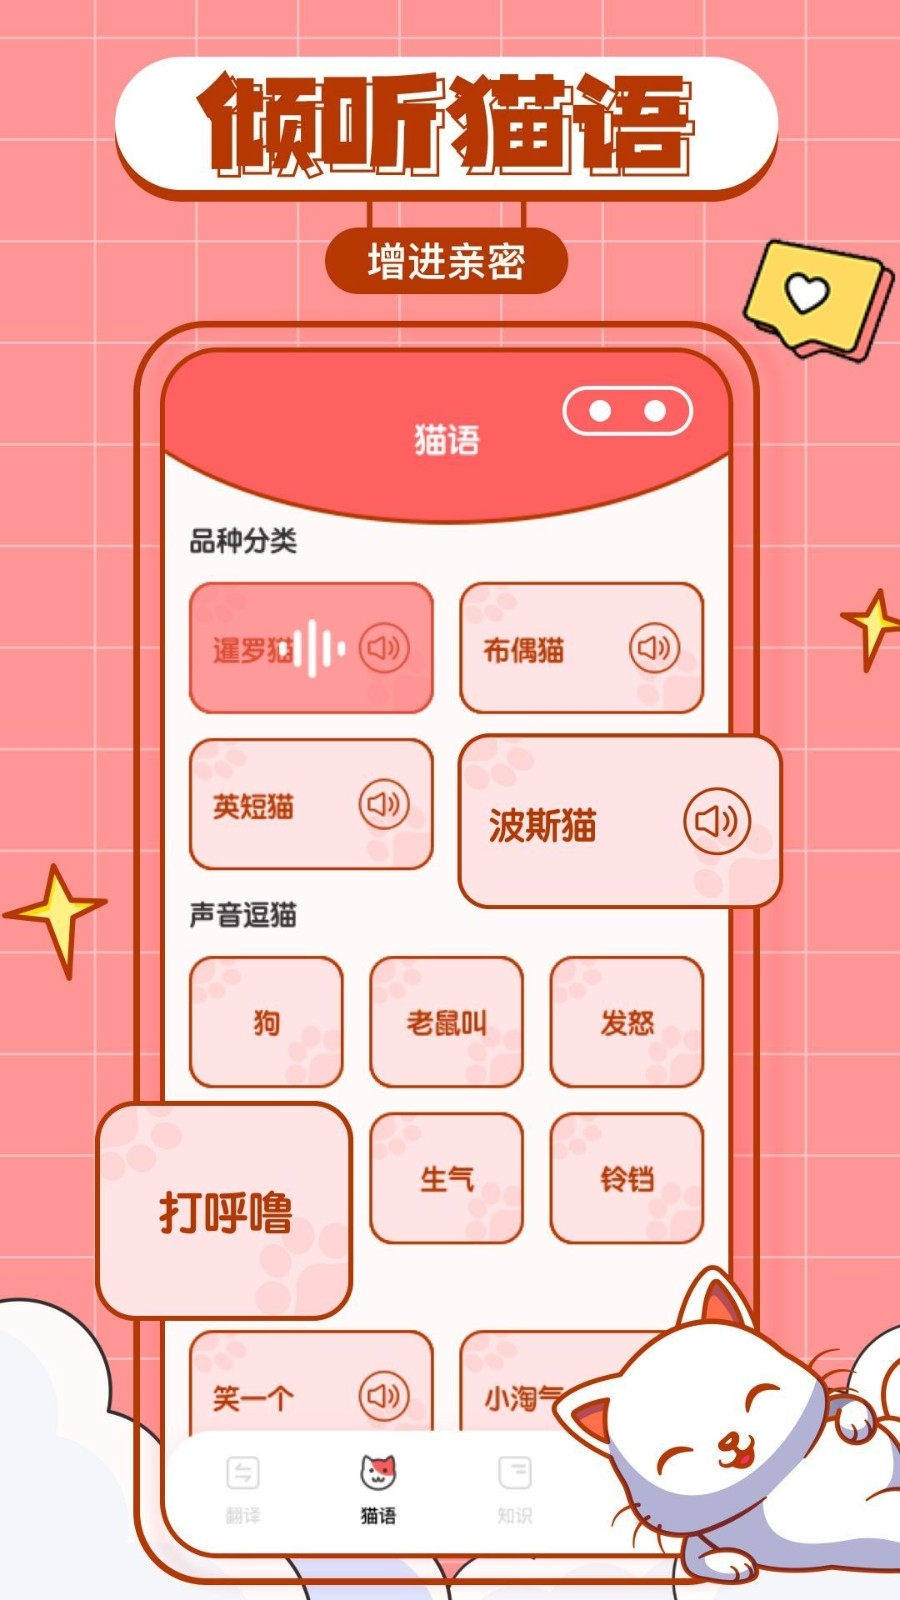 猫咪翻译物语app安卓版下载